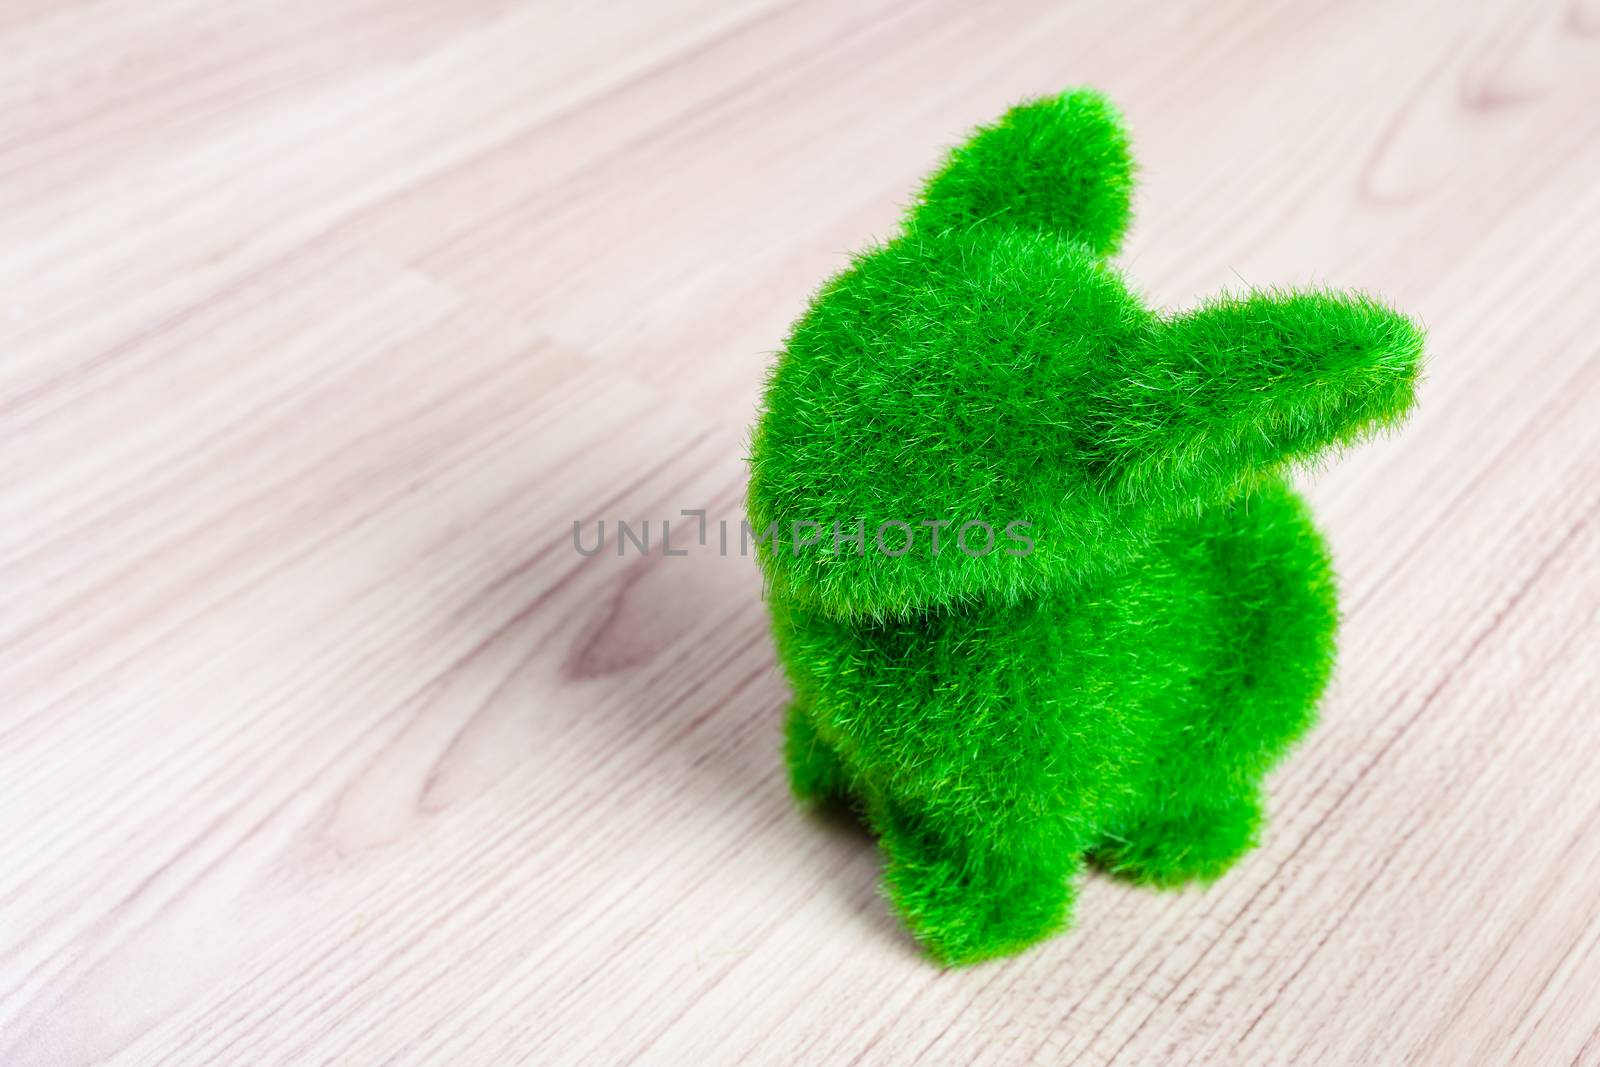 Little green rabbit on wooden floor, made from artificial grass by FrameAngel